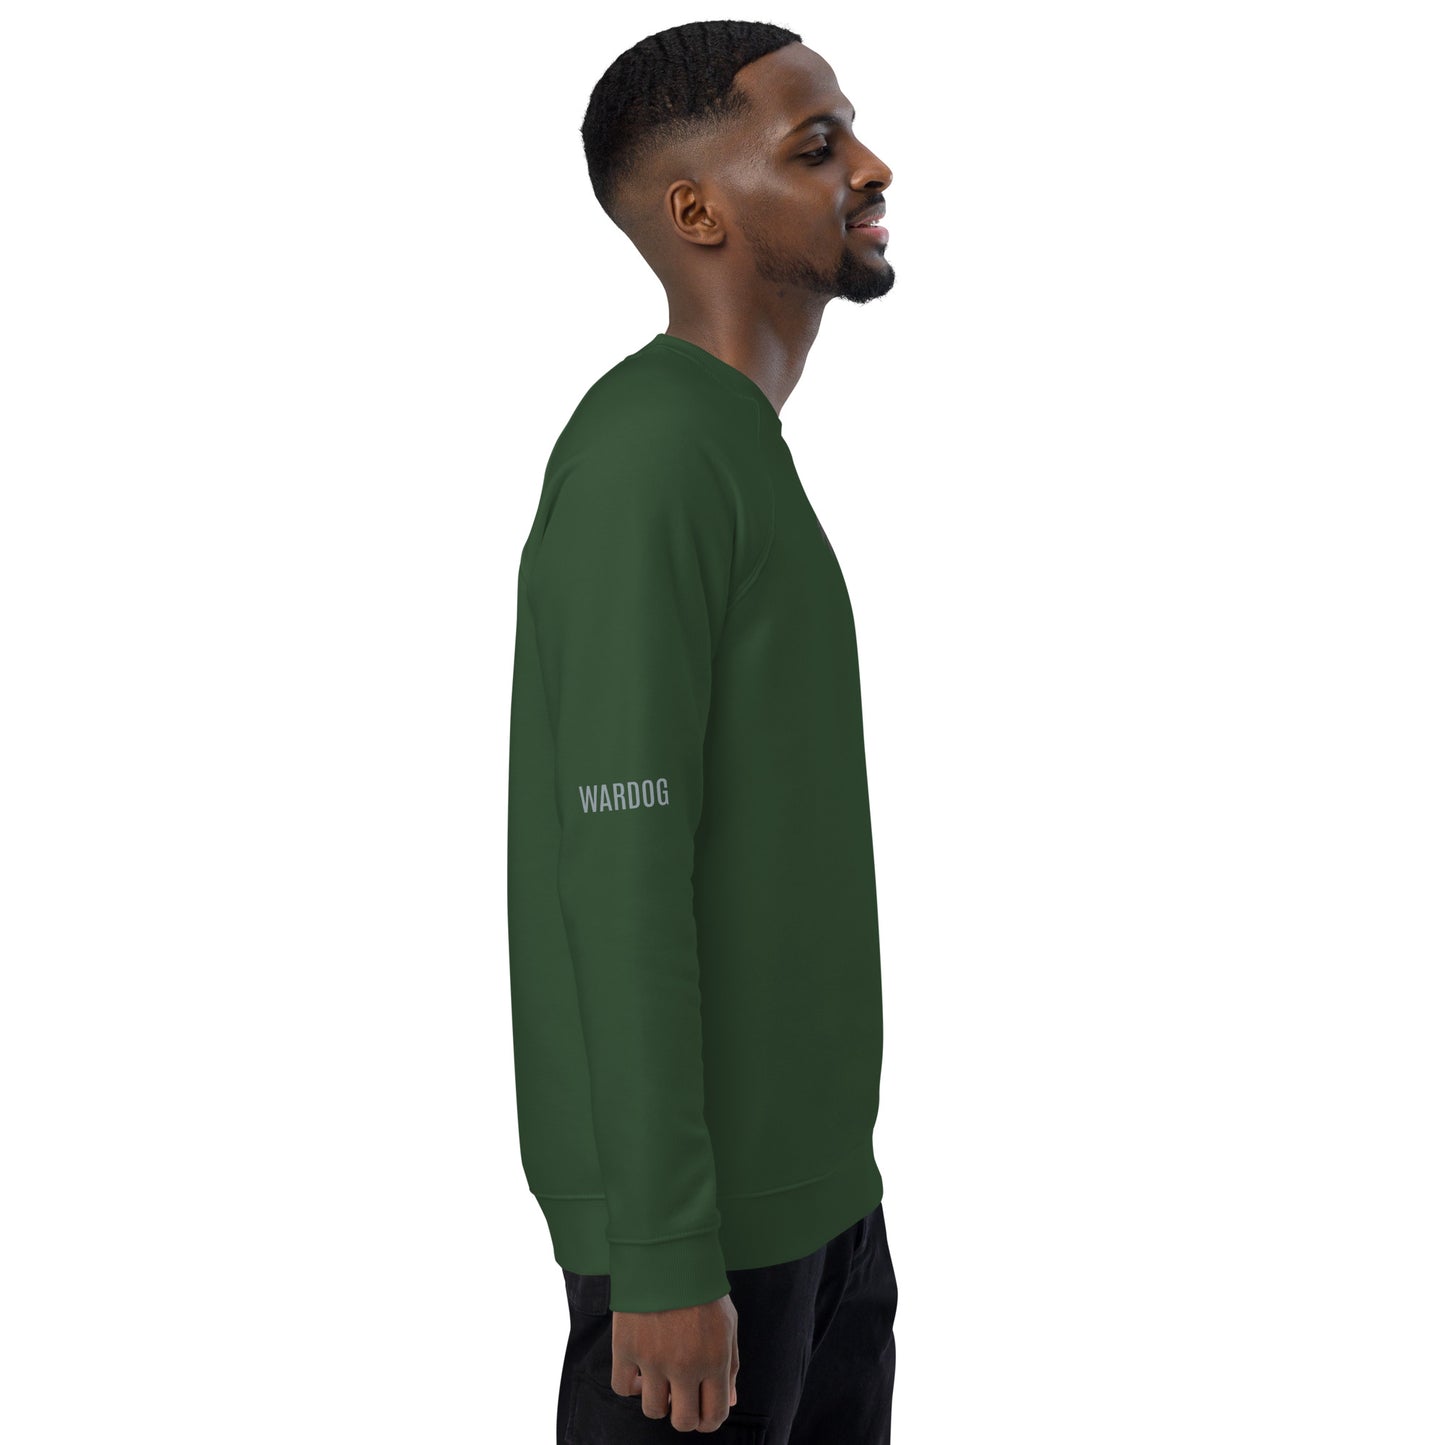 WARDOG sweatshirt